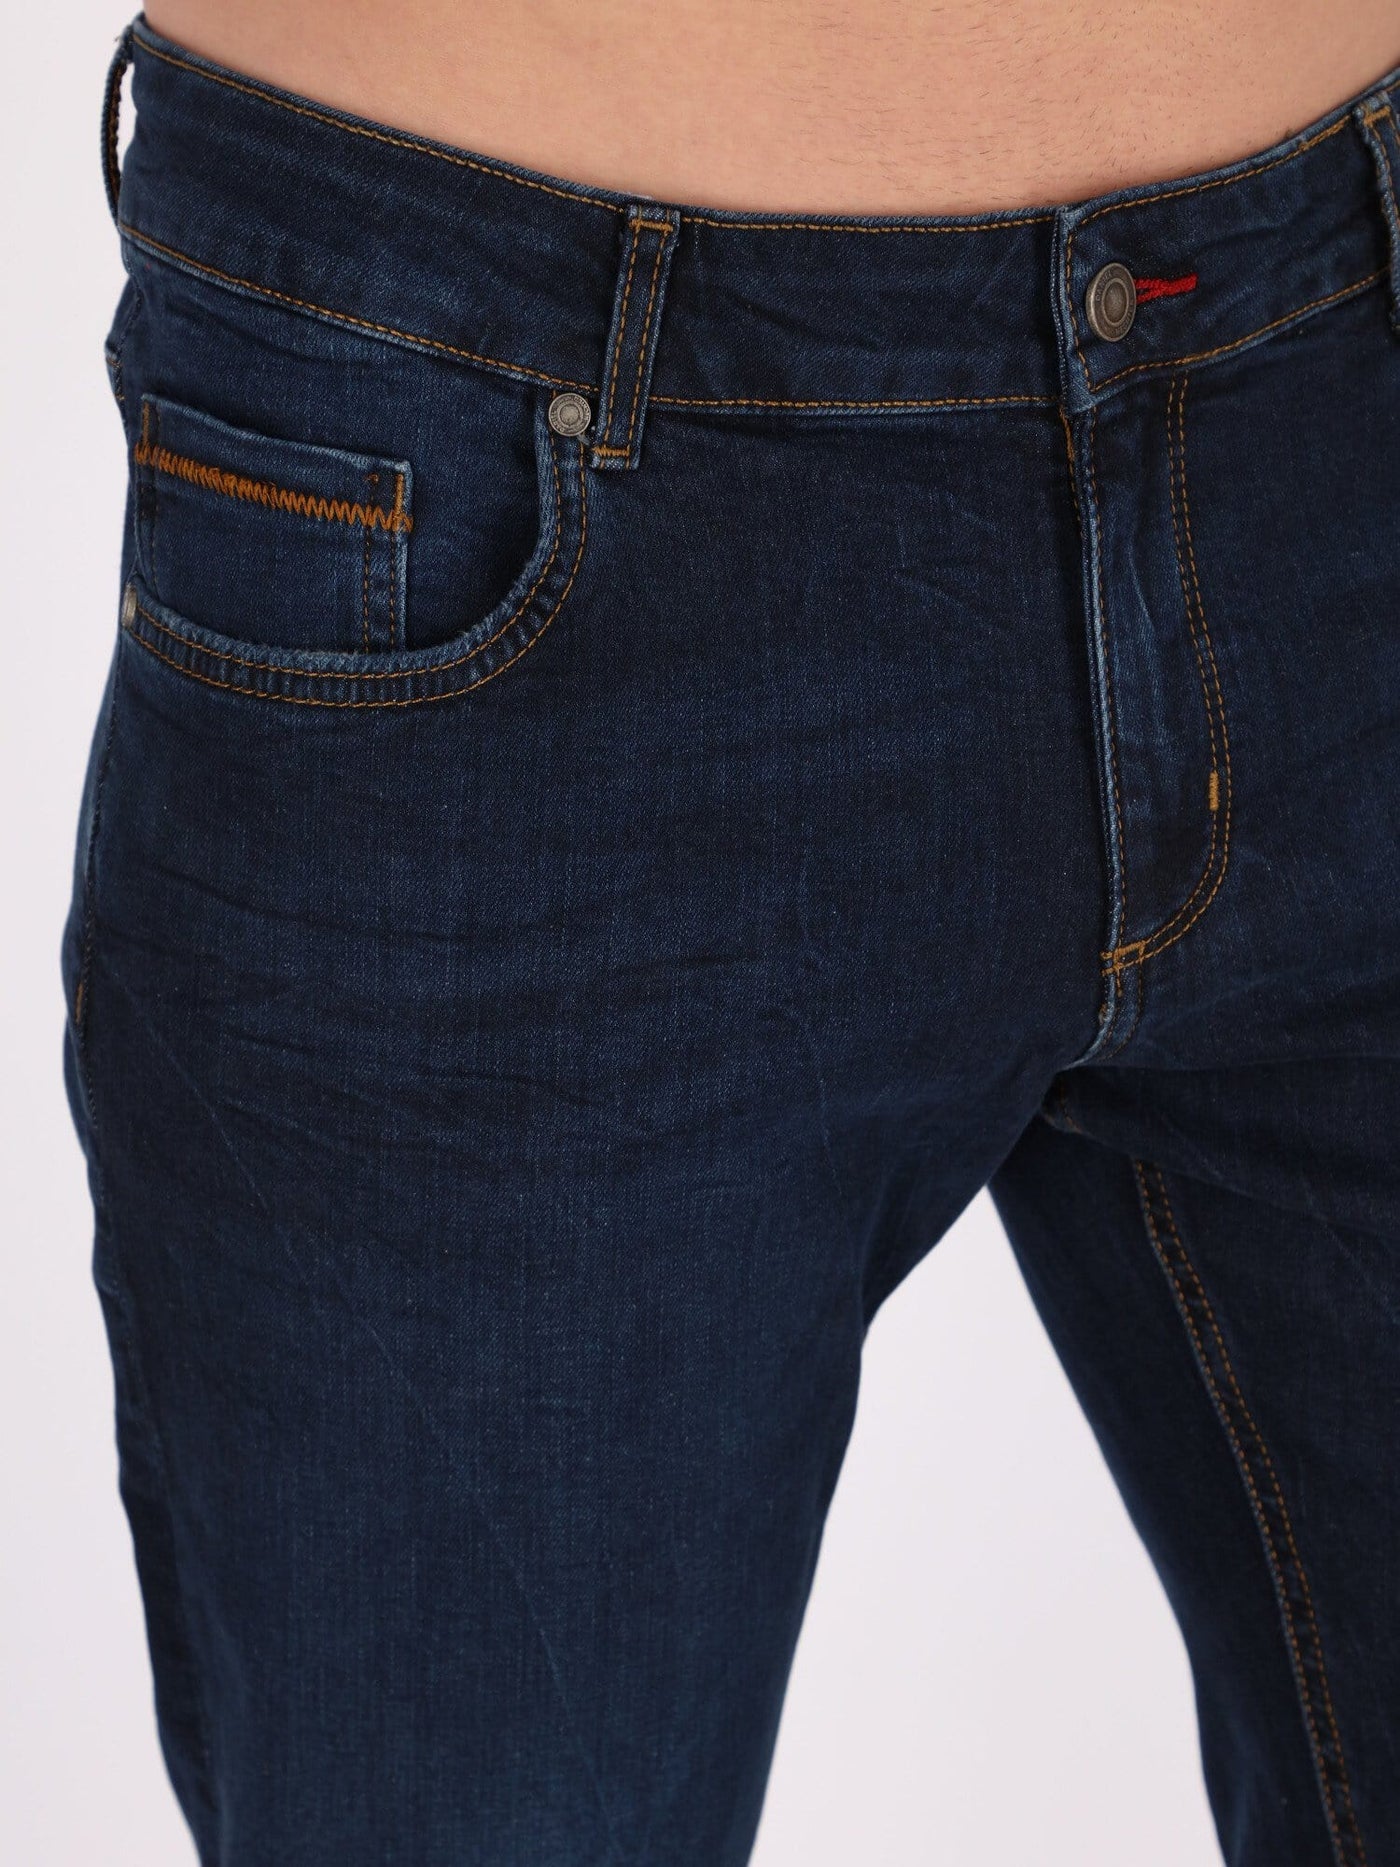 Daniel Hechter Jeans Navy / 30 Slim Fit Low-Rise Jeans Pants